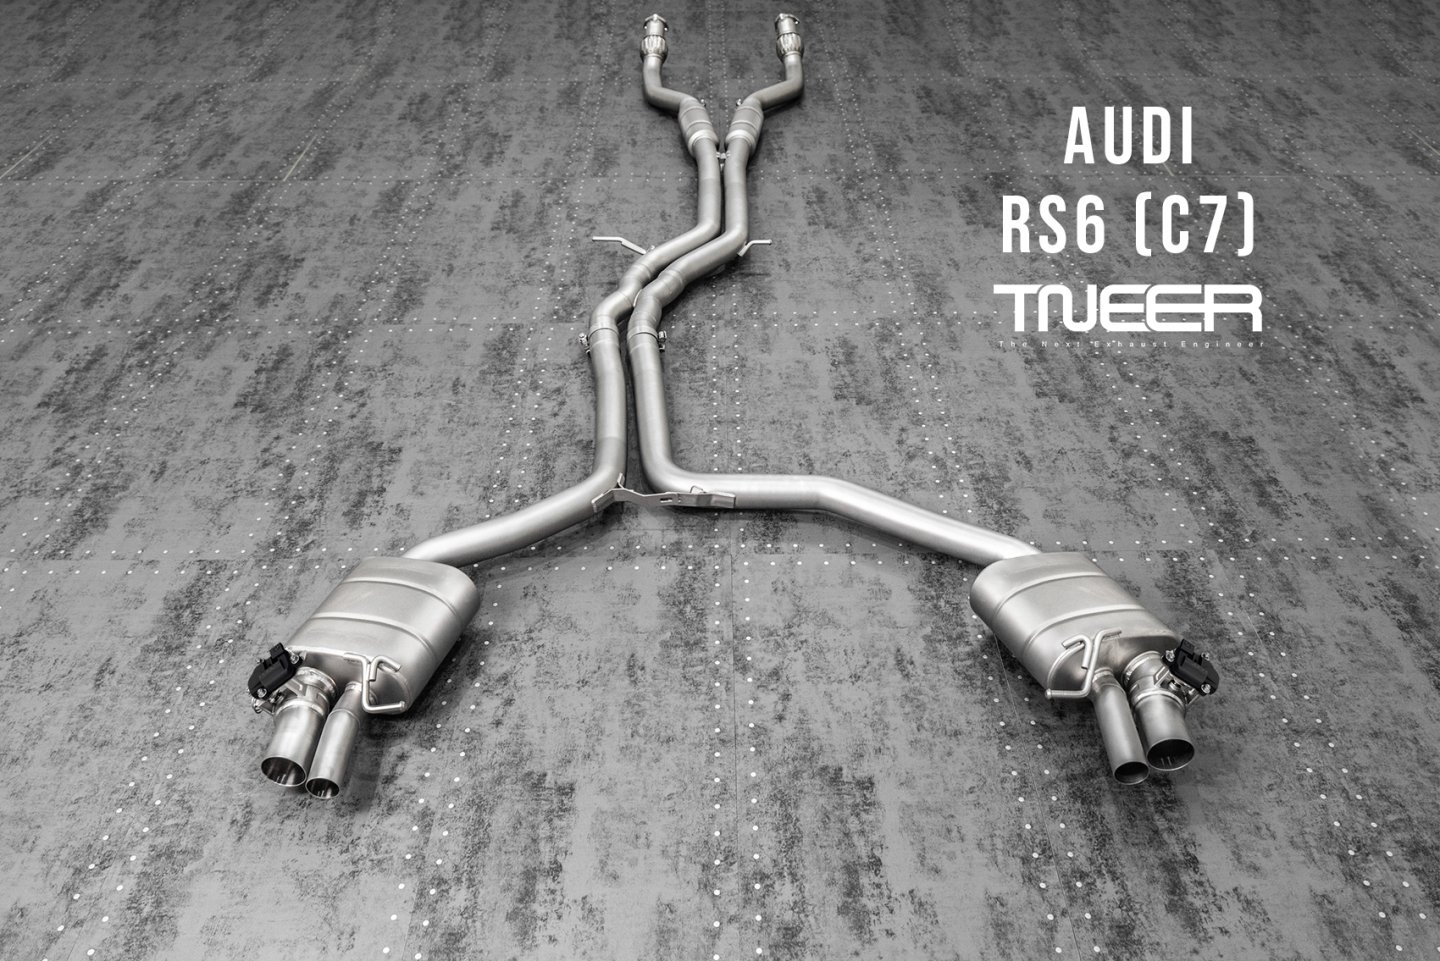 Audi RS6 (C7) 4.0 TFSI V8 TNEER Catless Downpipe